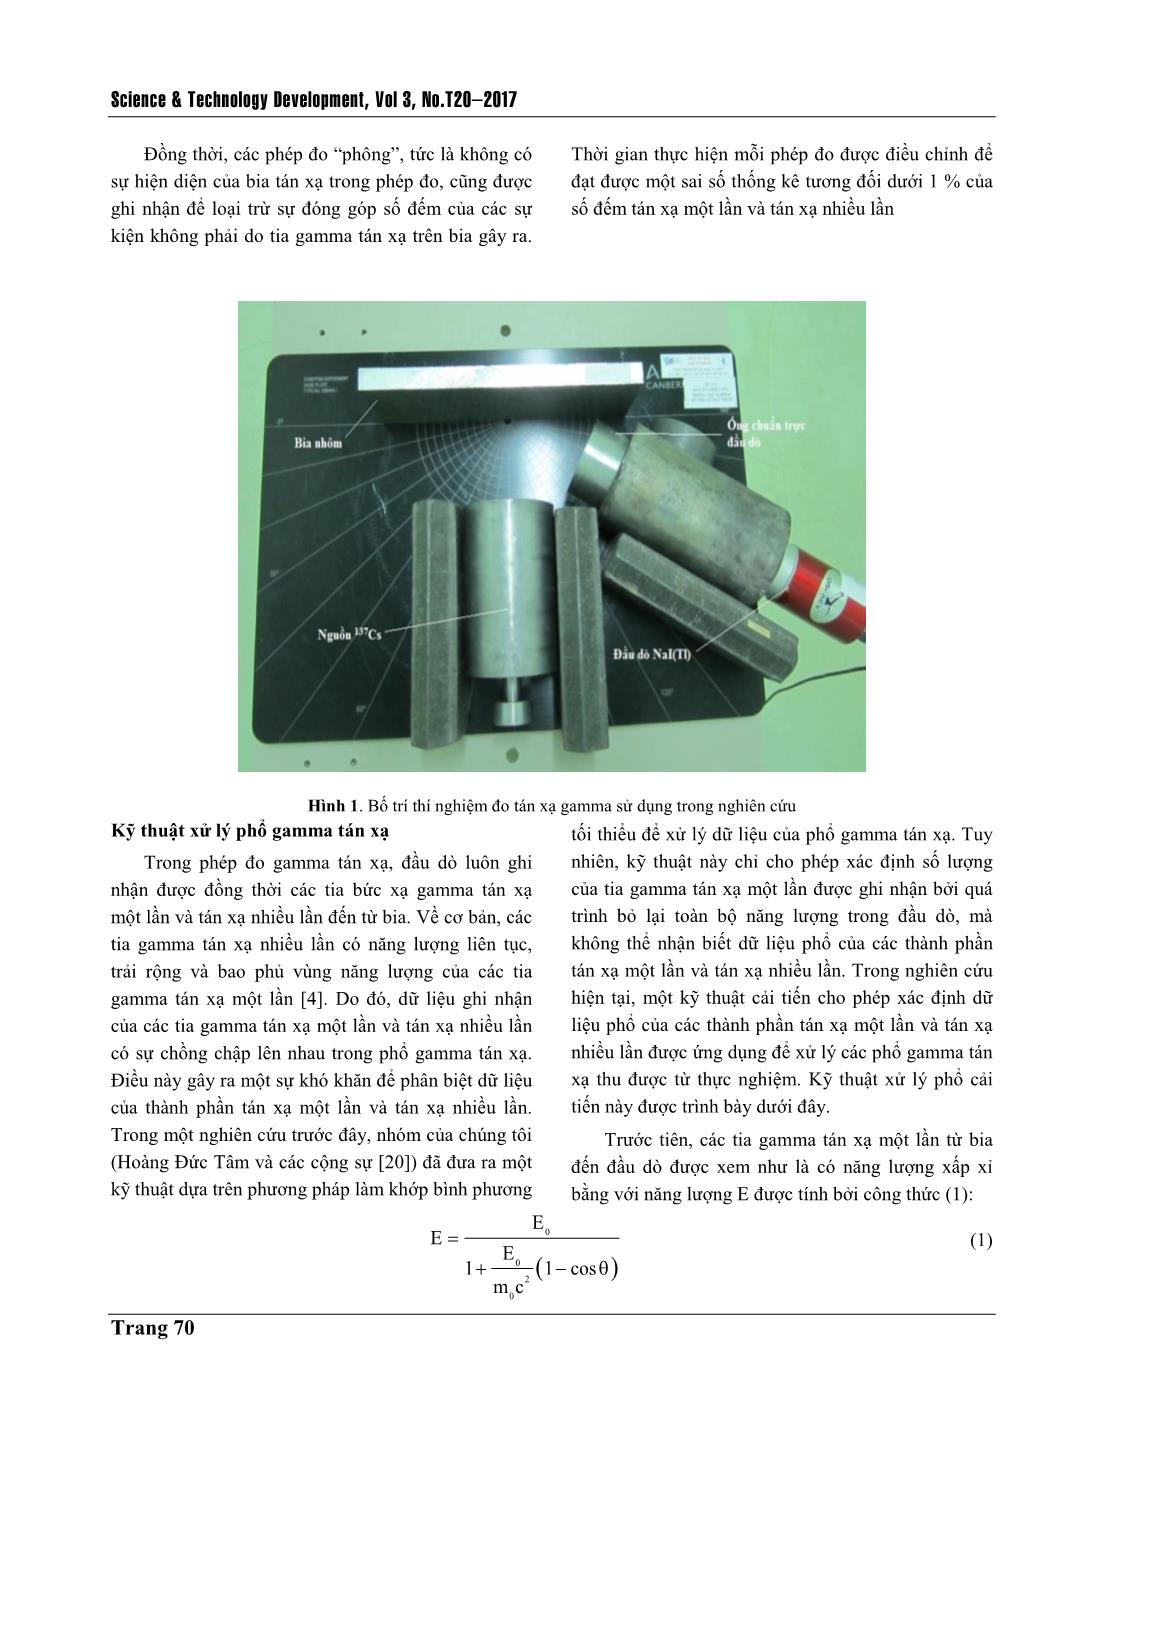 Nghiên cứu ảnh hưởng của đường kính ống chuẩn trực đầu dò lên bề dày bão hòa trong phép đo gamma tán xạ trang 3